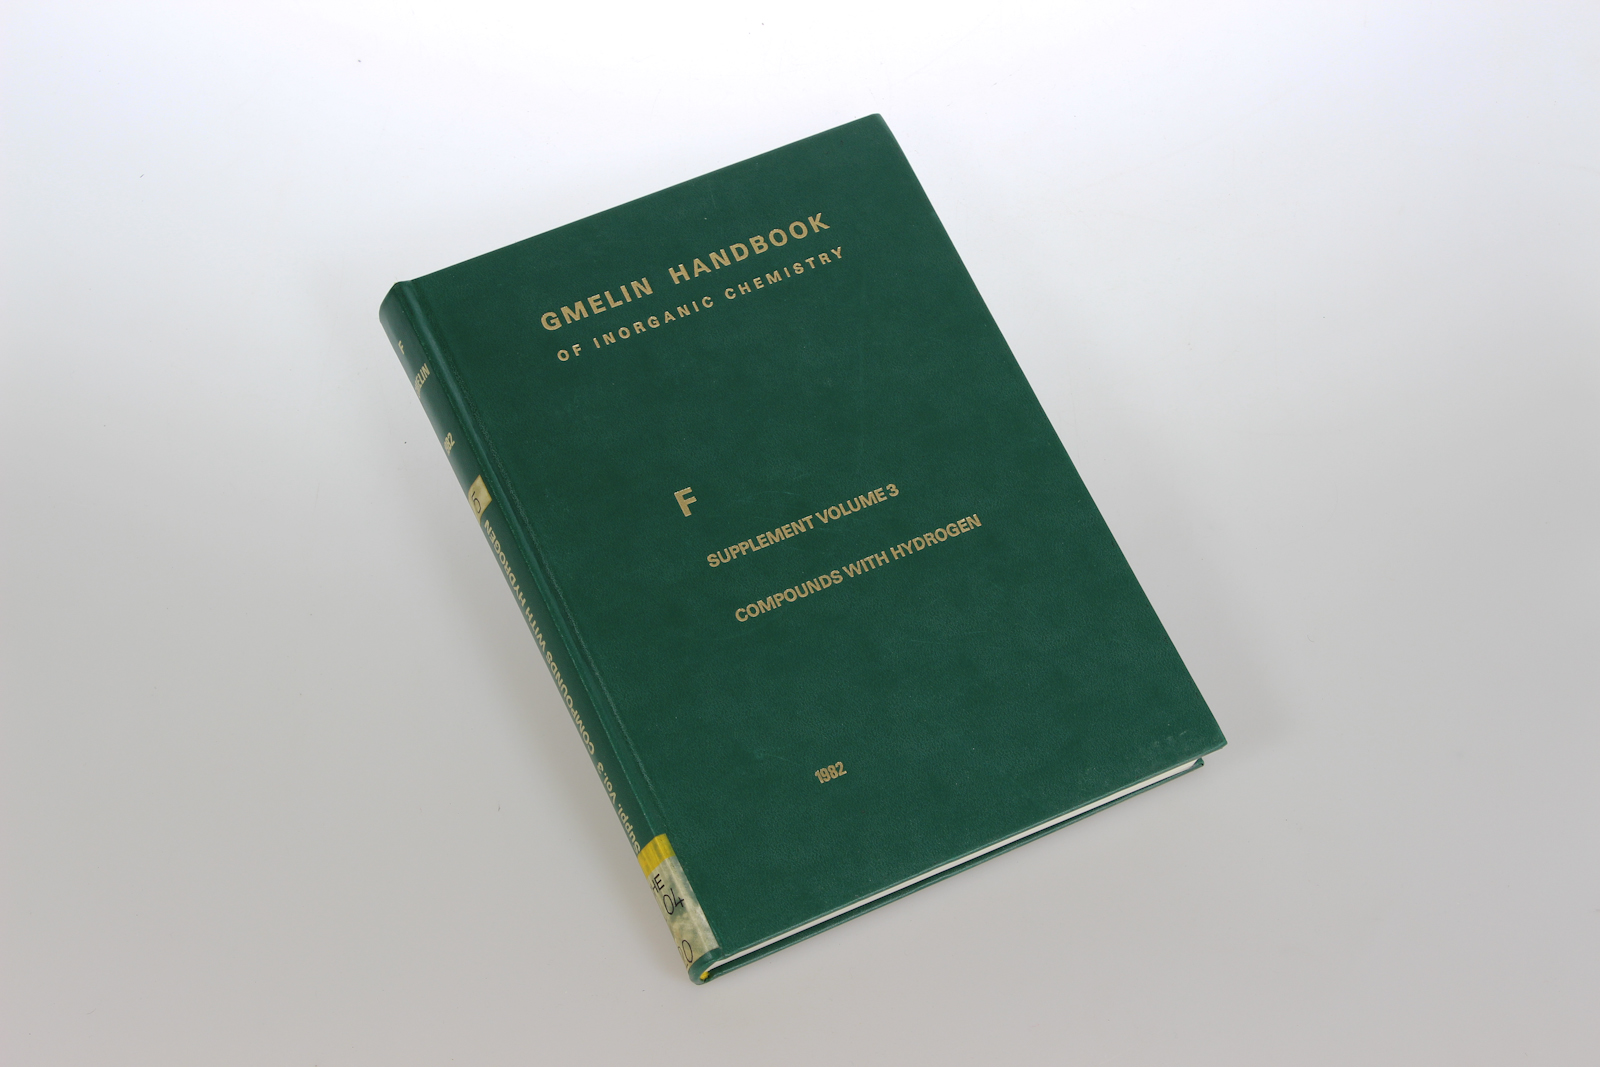 Gmelin-Institut fr Anorg. Chemie der Max-Planck-Gesellschaft zur Frderung d. Wissensch. (Hg):  Gmelin Handbook of Inorganic Chemistry. System Number 5: F Fluorine. Supplement Volume 3: Compounds with Hydrogen. 